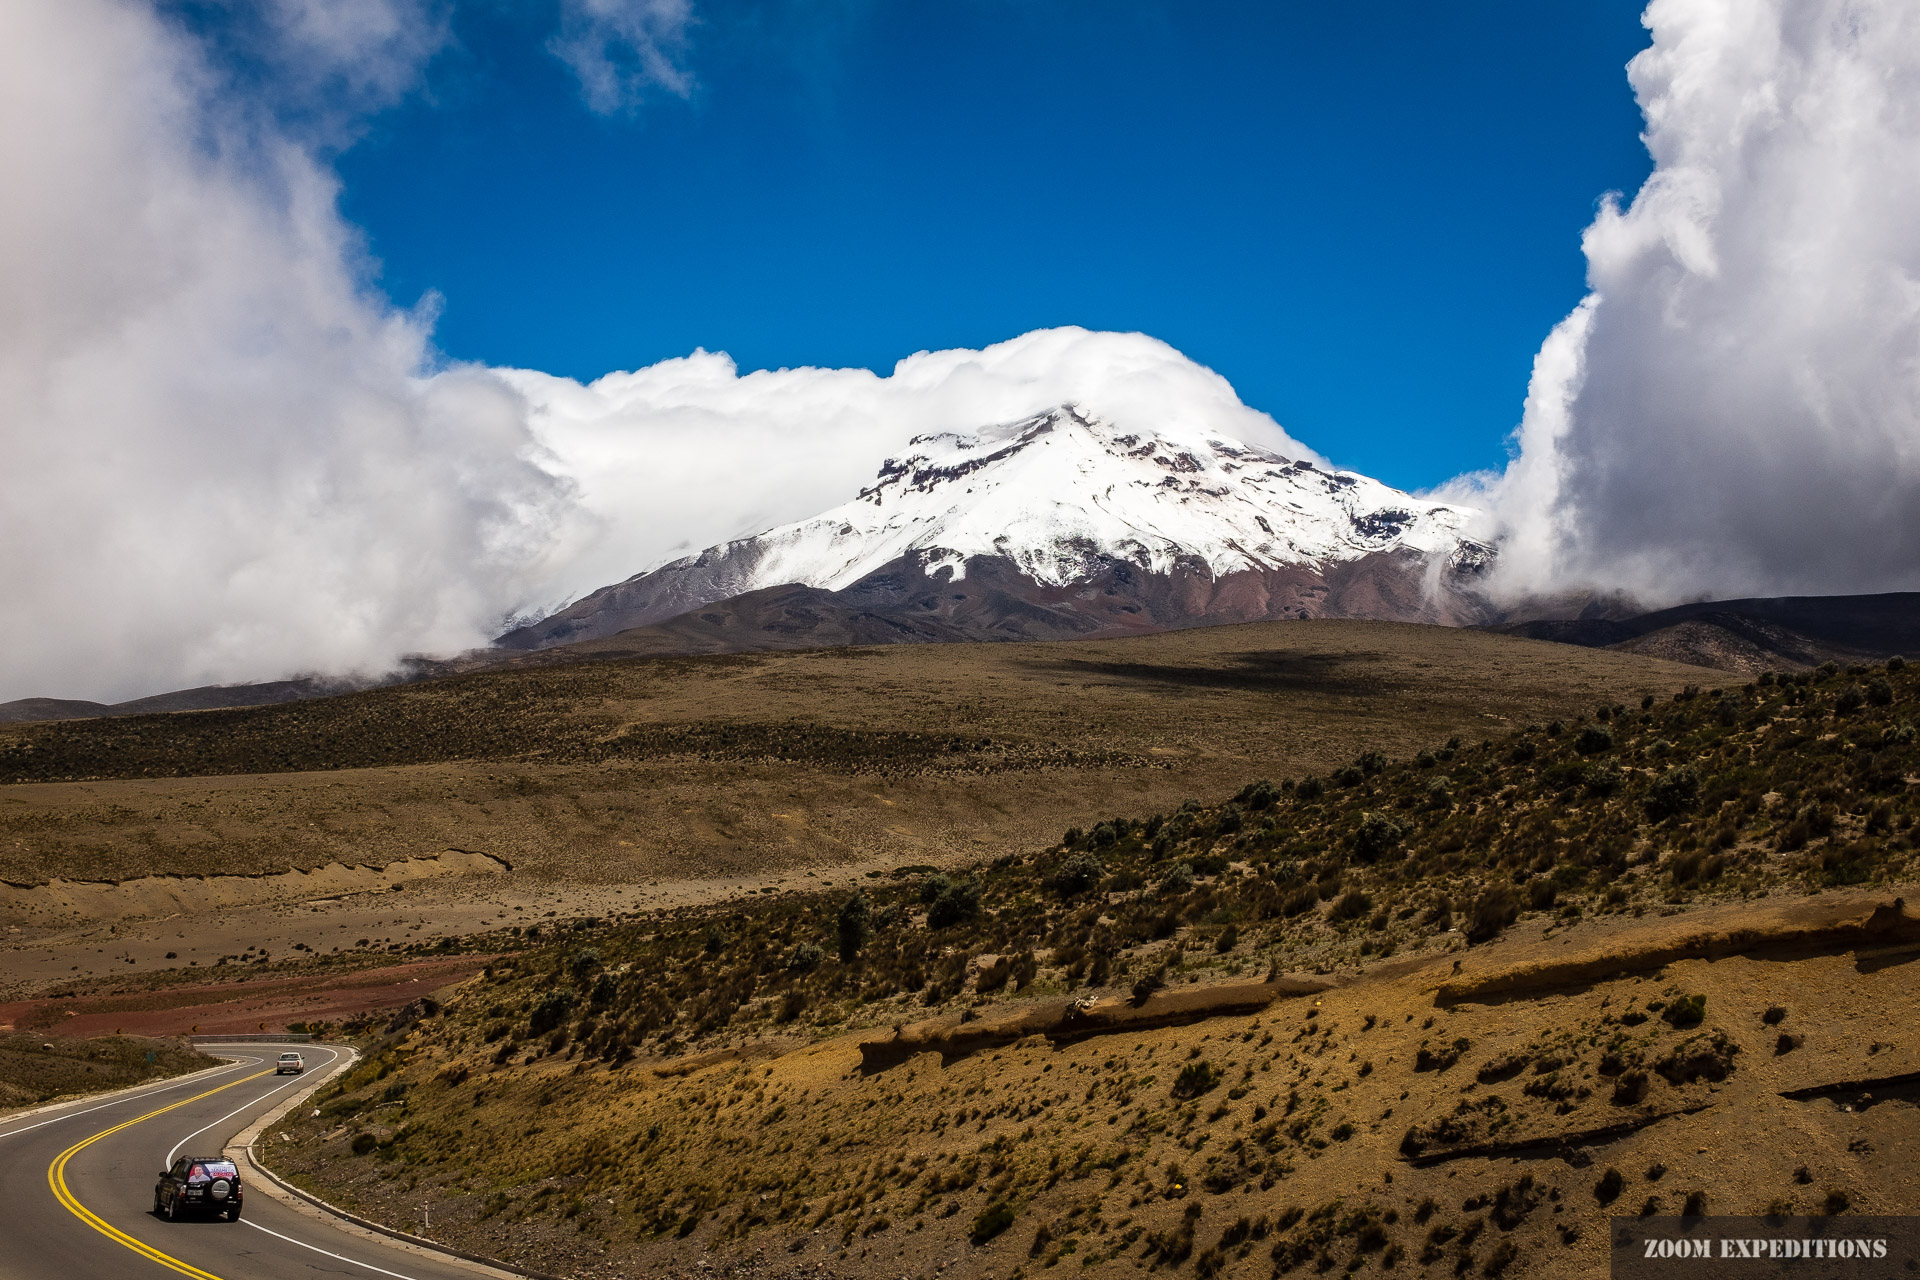 Chimborazo in between clouds